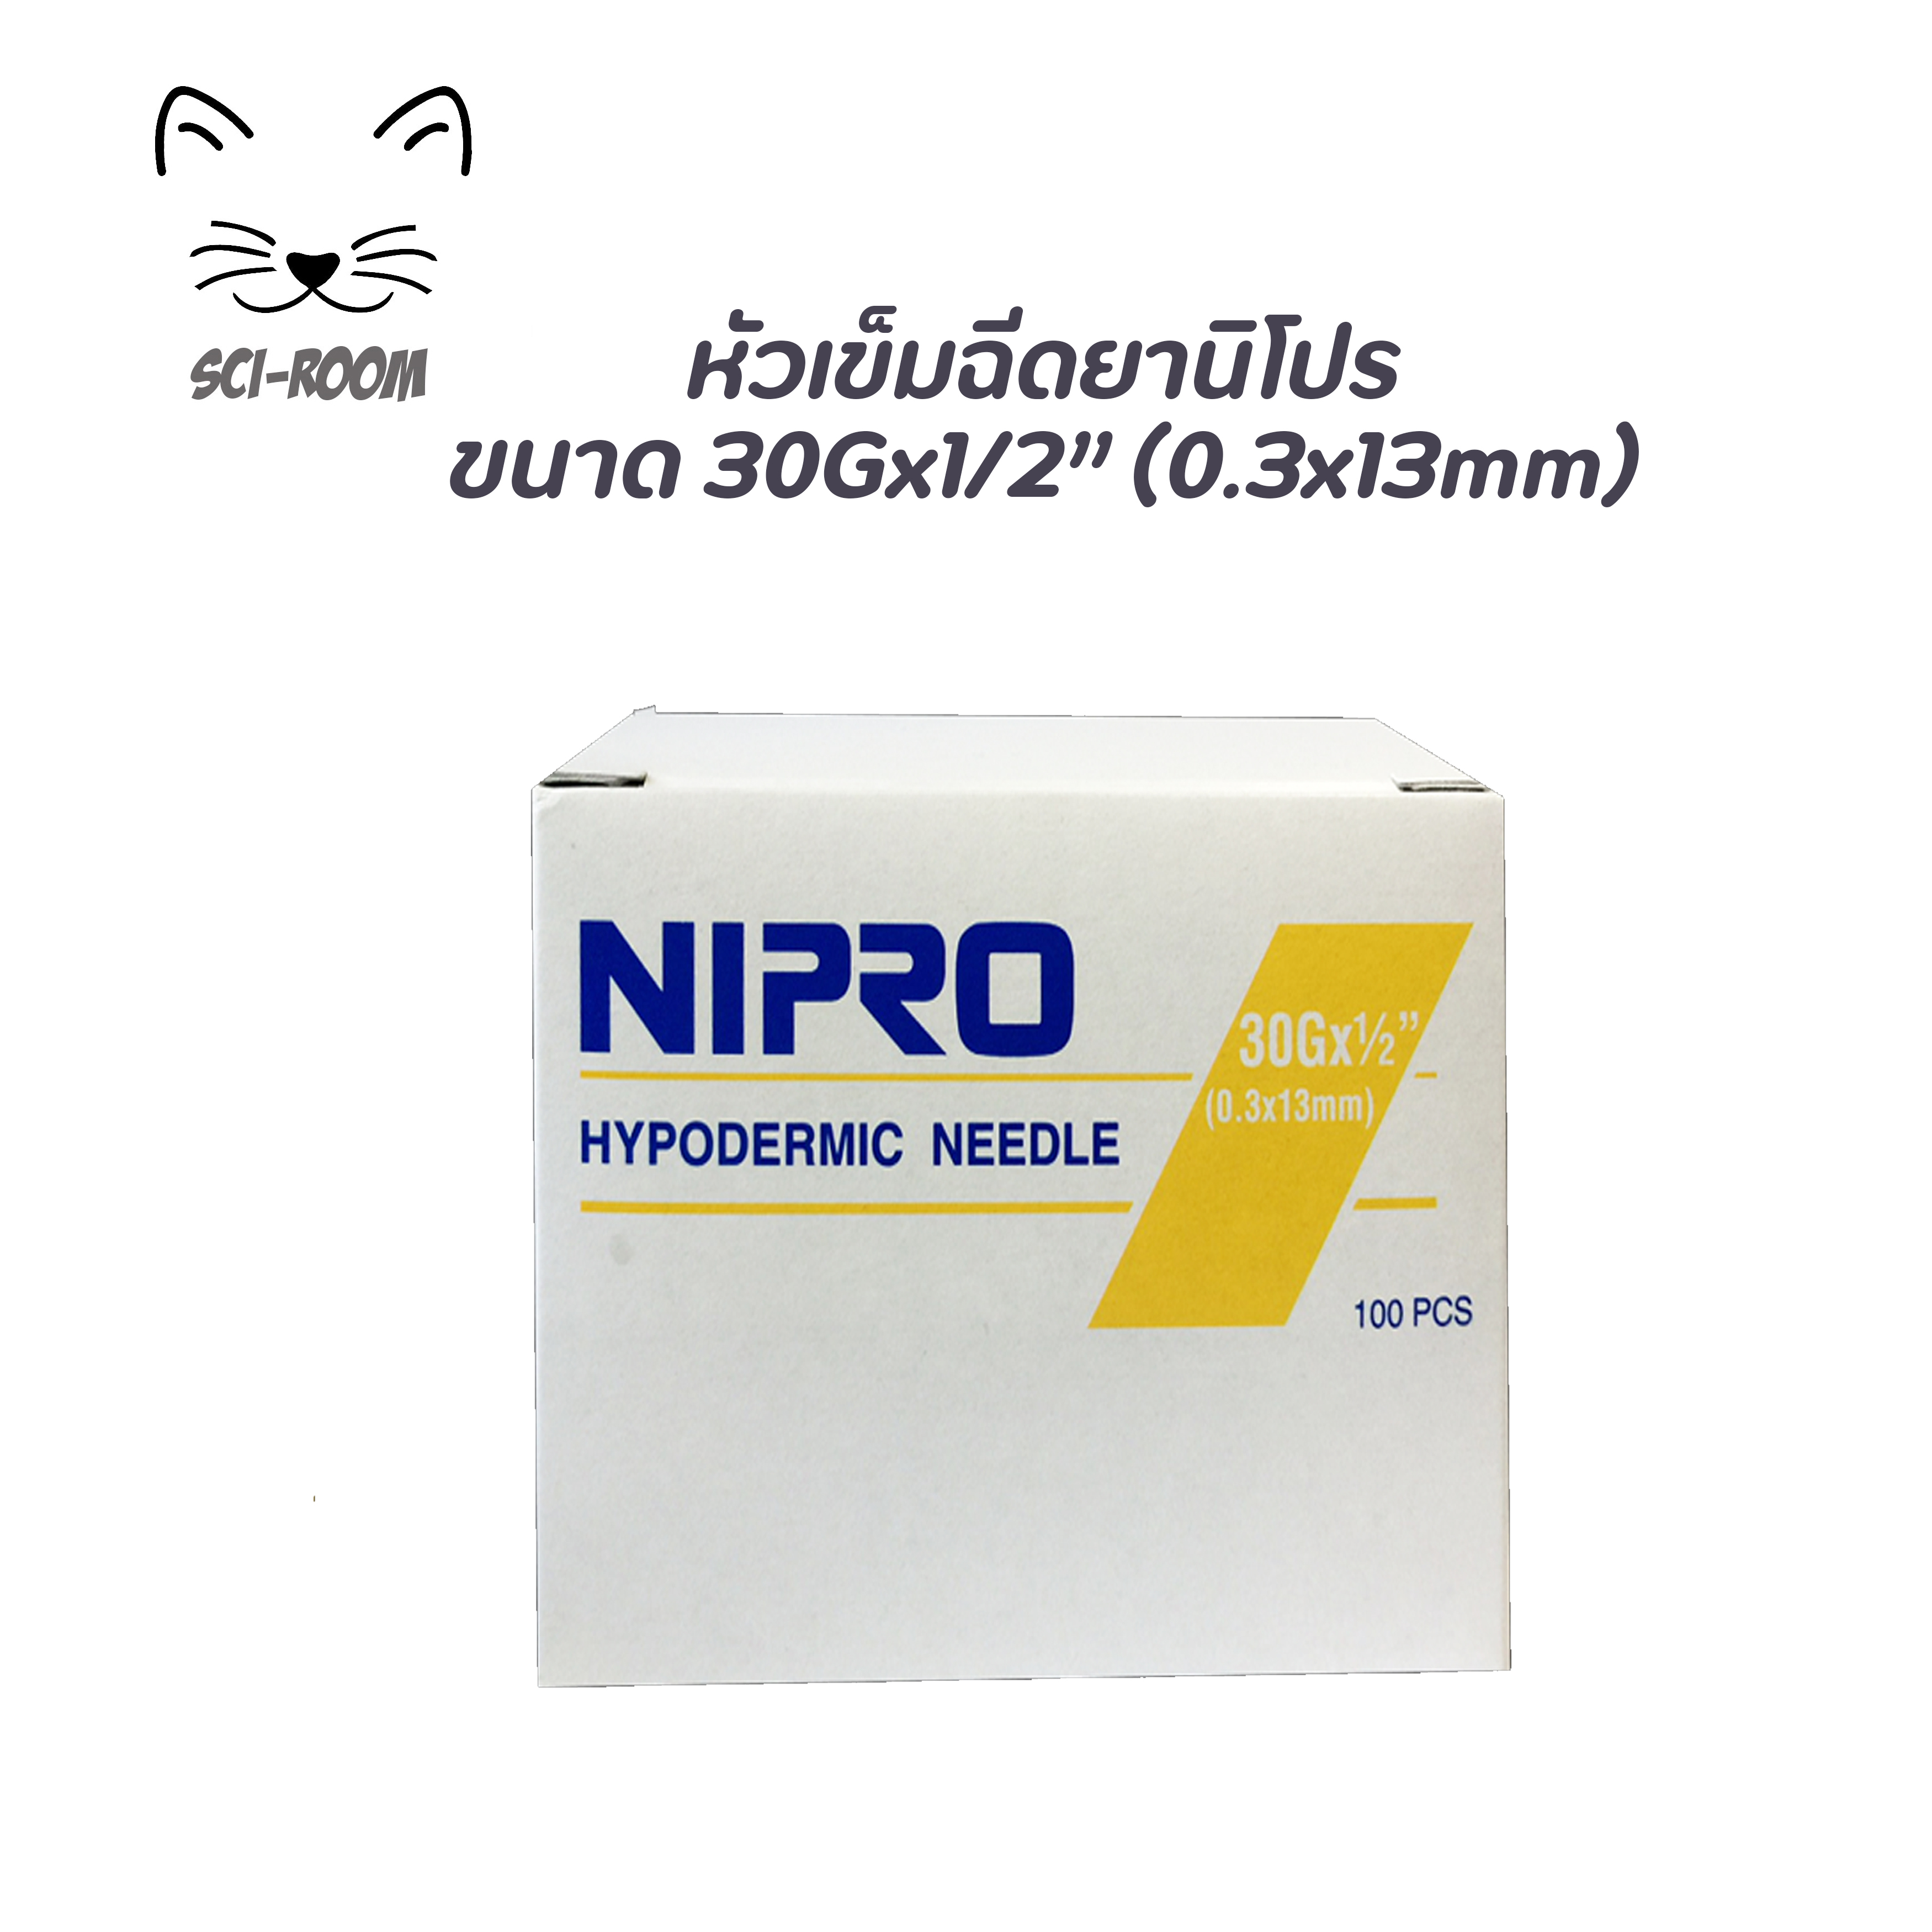 เข็มฉีดยานิโปร ขนาด 30G x 1/2นิ้ว (0.3 x 13mm) Nipro Hypodermic Needle (100ชิ้น/กล่อง)(Sterile) สำหรับฉีดยา วัคซีน ใช้ได้ทั้งคนและสัตว์เลี้ยง ผ่านการสเตอไรซ์ฆ่าเชื้อ